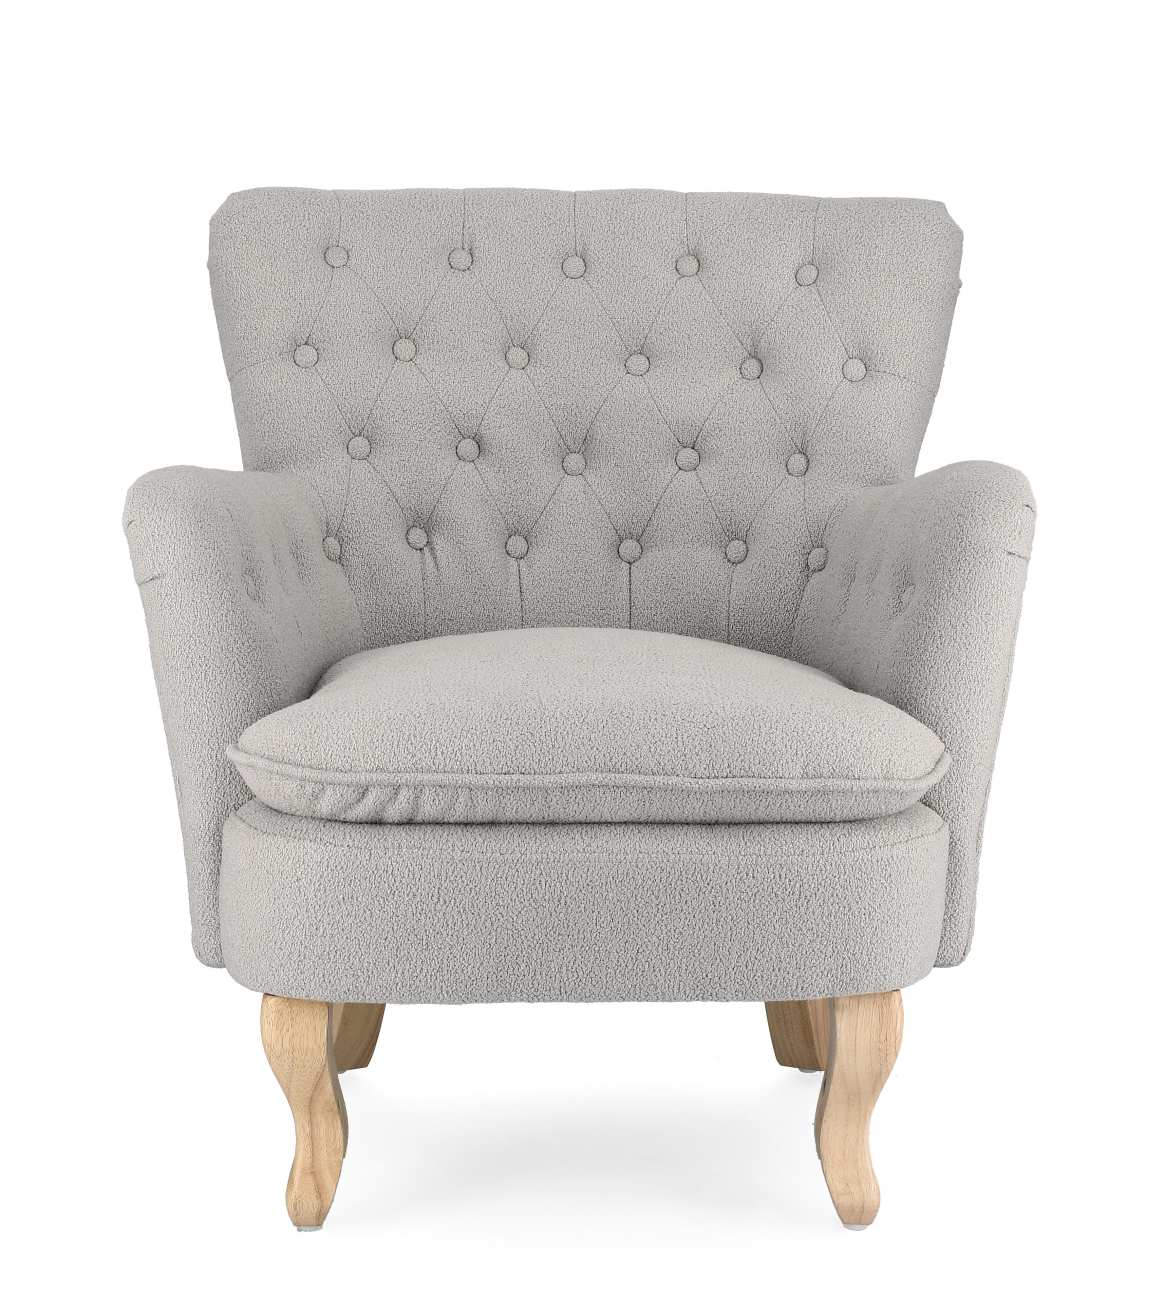 Der Sessel Orlins überzeugt mit seinem modernen Stil. Gefertigt wurde er aus Bouclè-Stoff, welcher einen grauen Farbton besitzt. Das Gestell ist aus Kiefernholz und hat eine natürliche Farbe. Der Sessel verfügt über eine Armlehne.